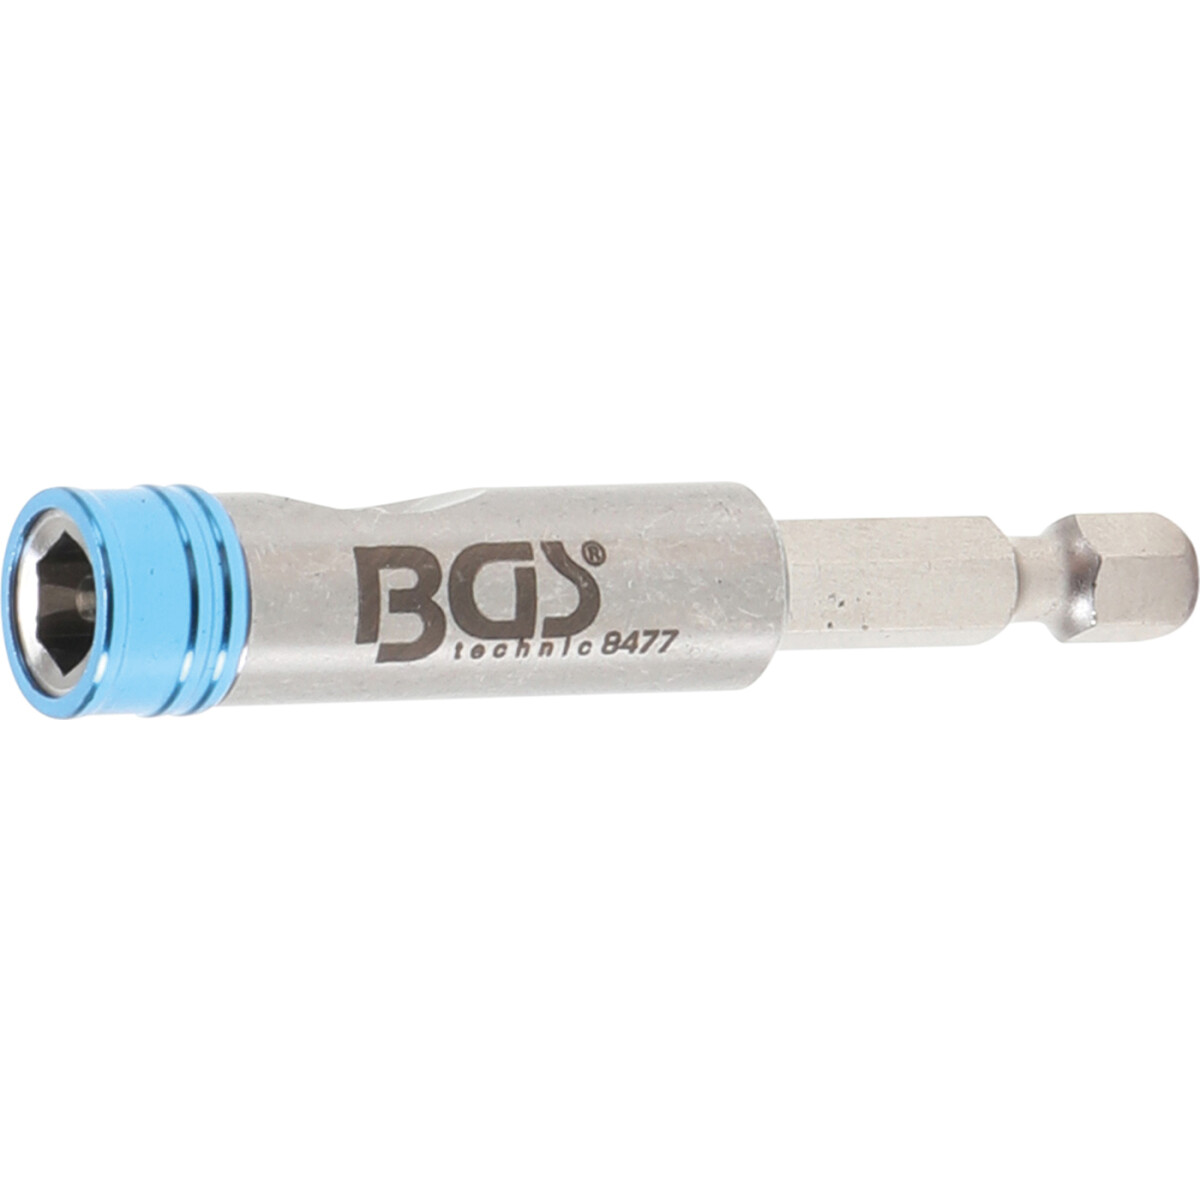 BGS Bithalter mit Schnellwechsler | 6,3 mm (1/4) (BGS 8477)